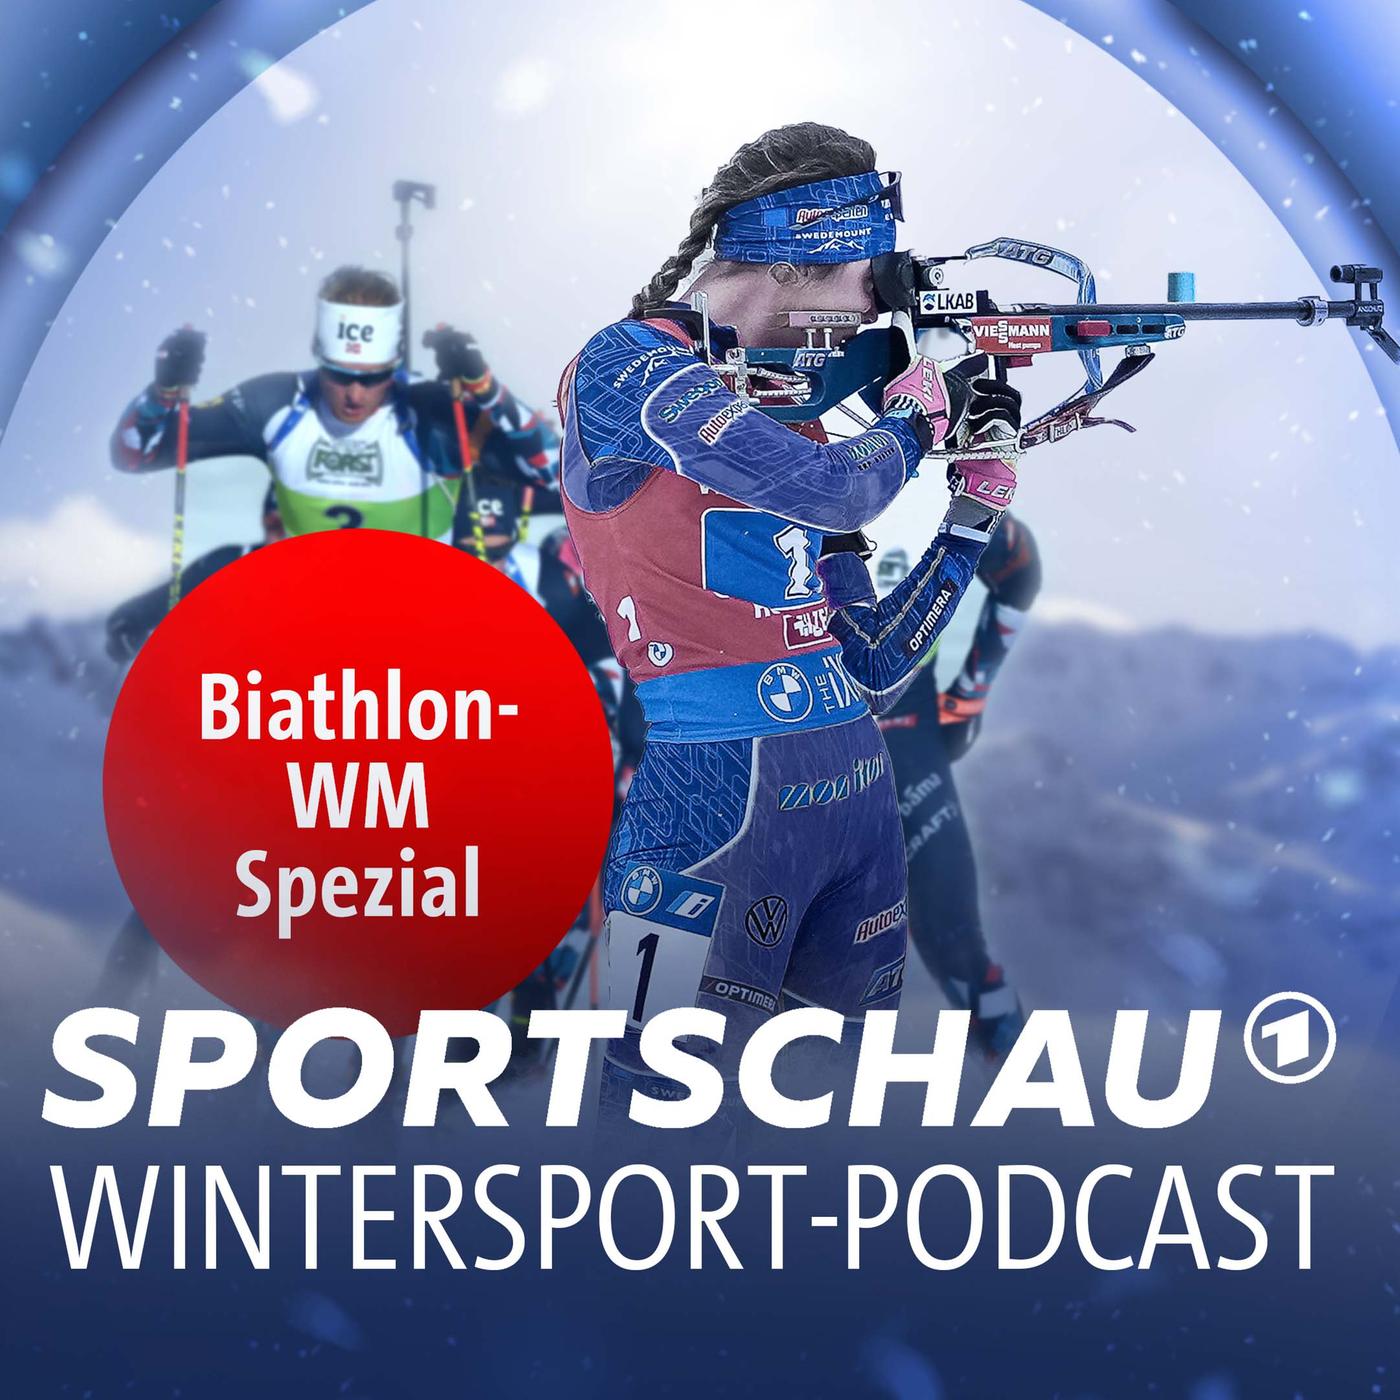 Sportschau-Wintersport-Podcast · Der Podcast zur Biathlon-WM mit Justus Strelow · Podcast in der ARD Audiothek